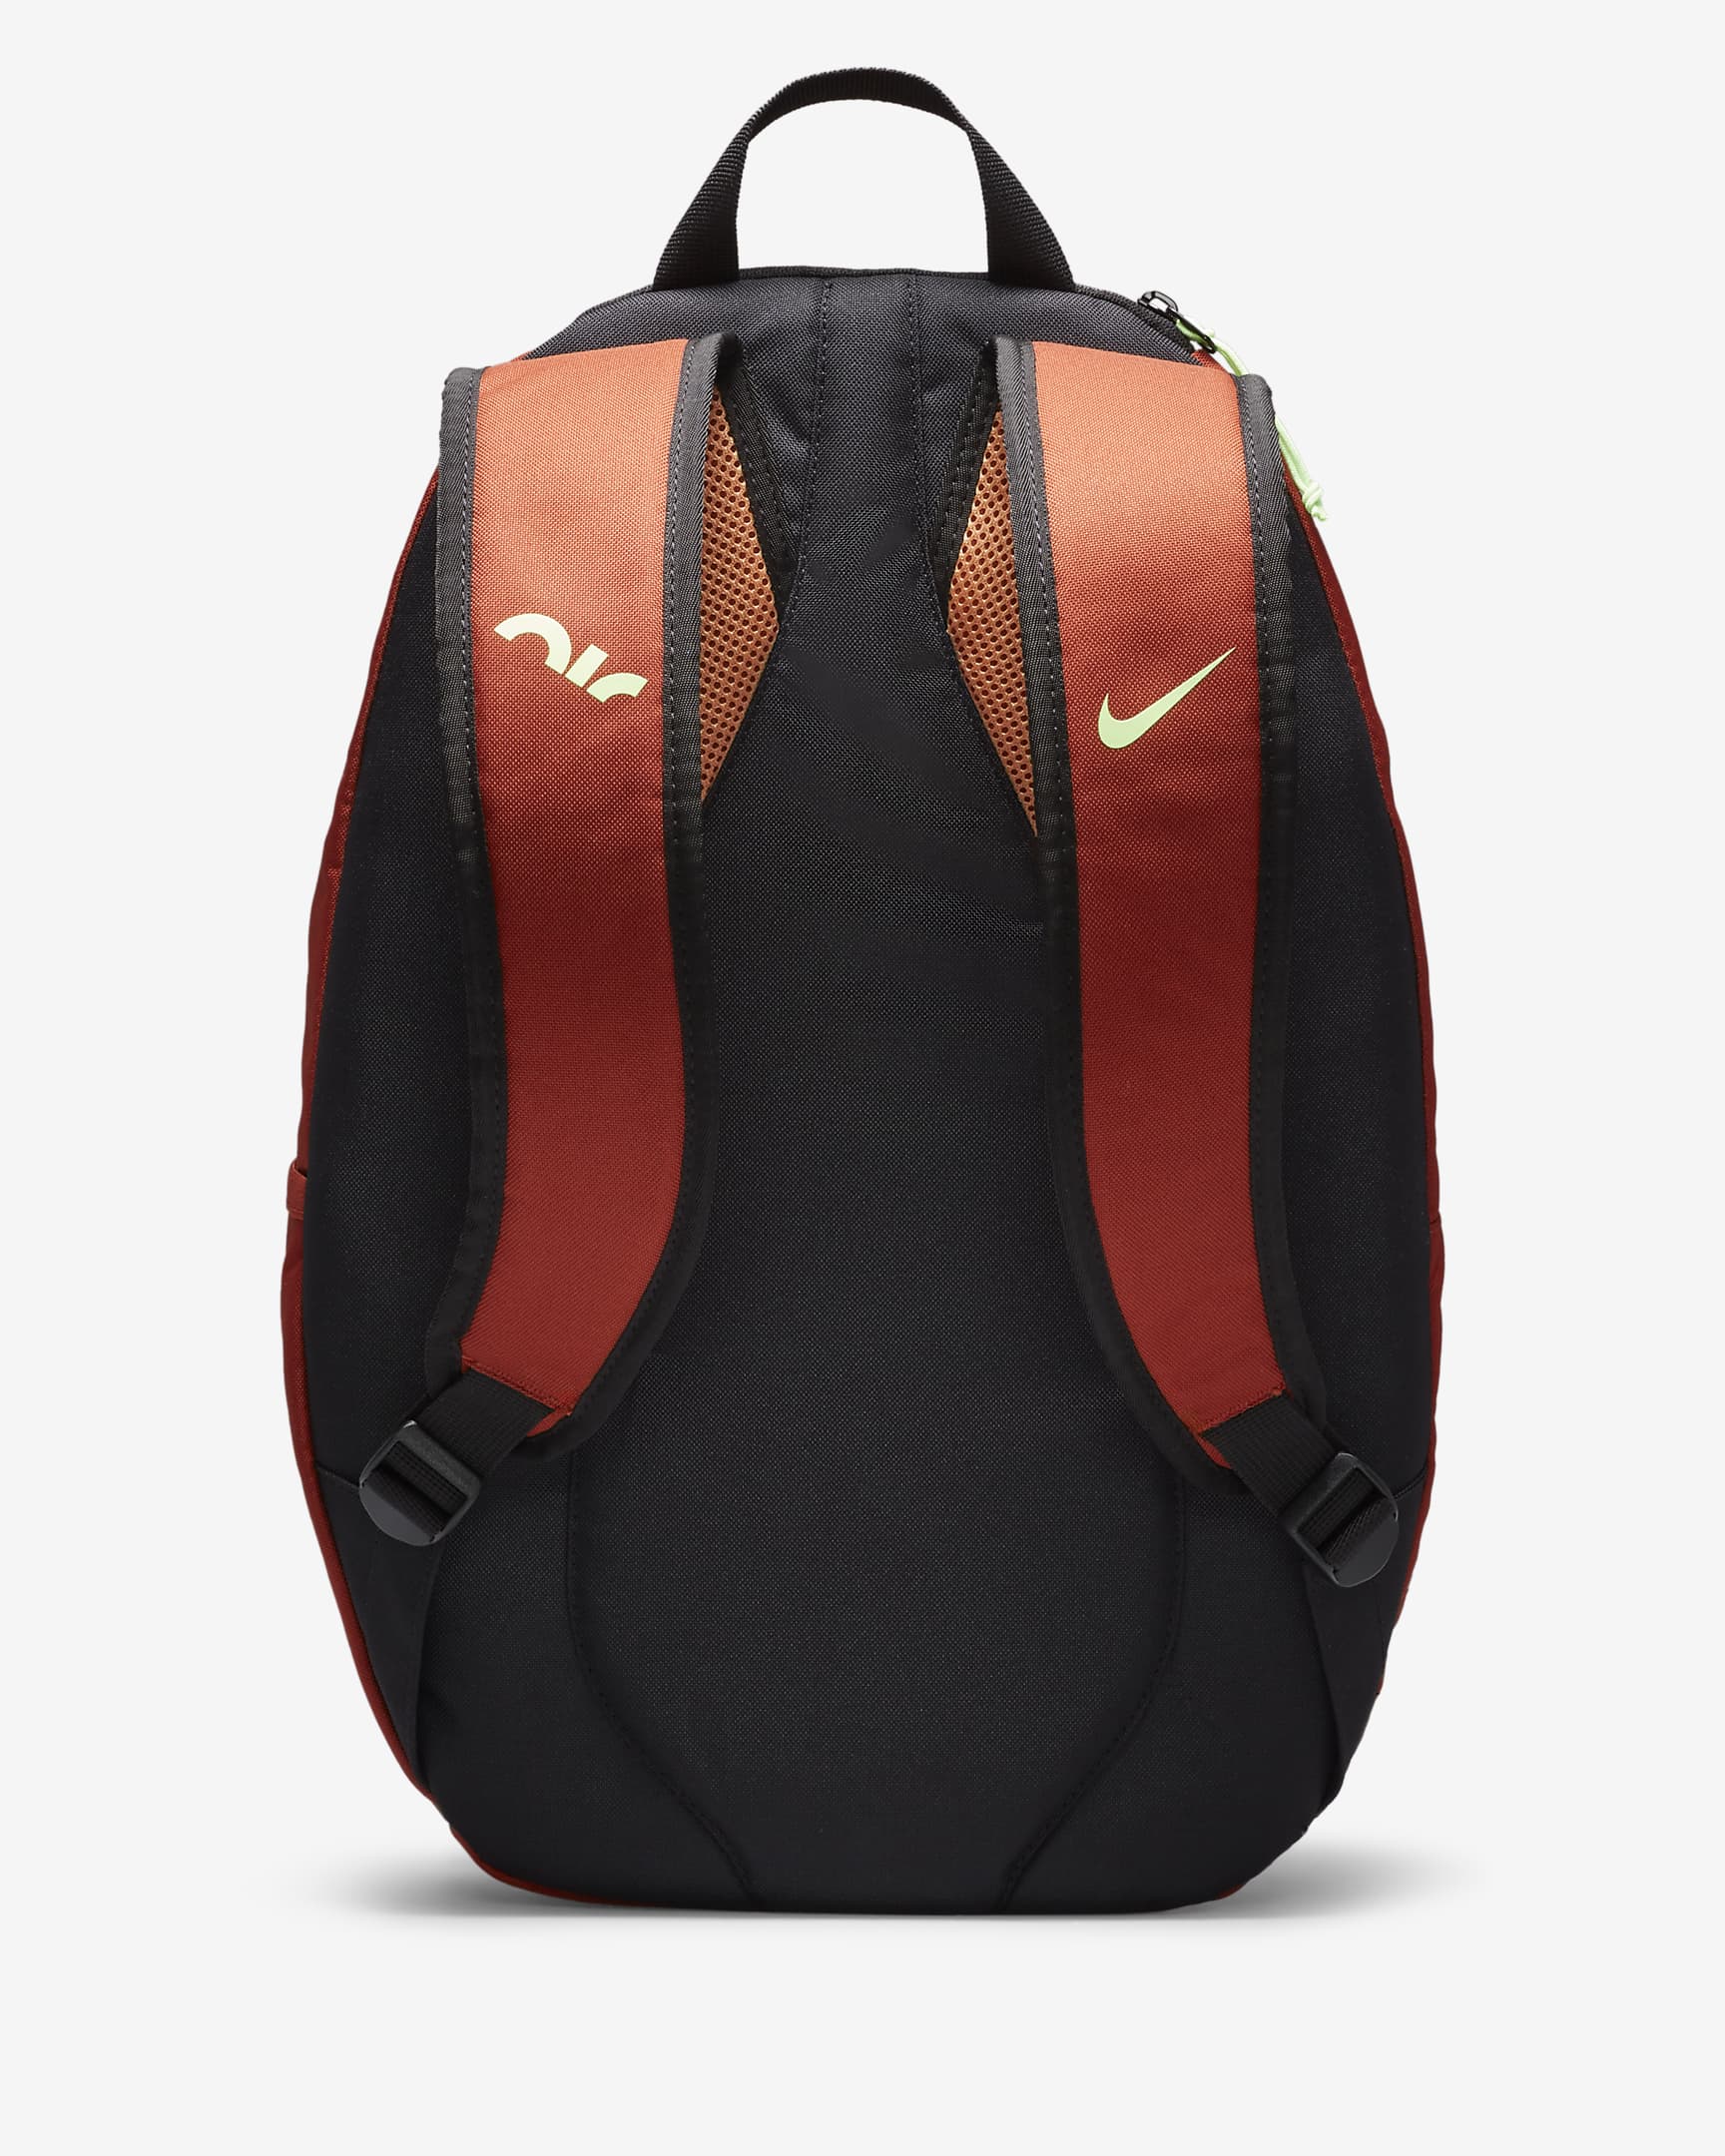 Nike Air Backpack (21L) - Rugged Orange/Amber Brown/Lime Blast